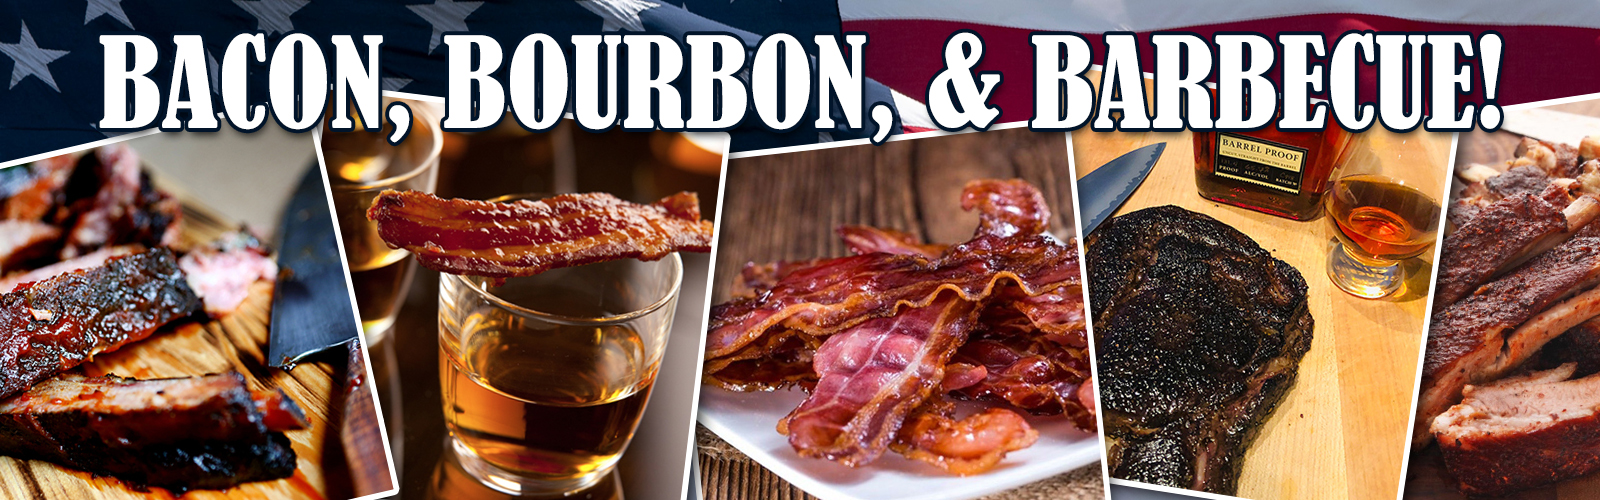 Bacon, Bourbon, & Barbecue!